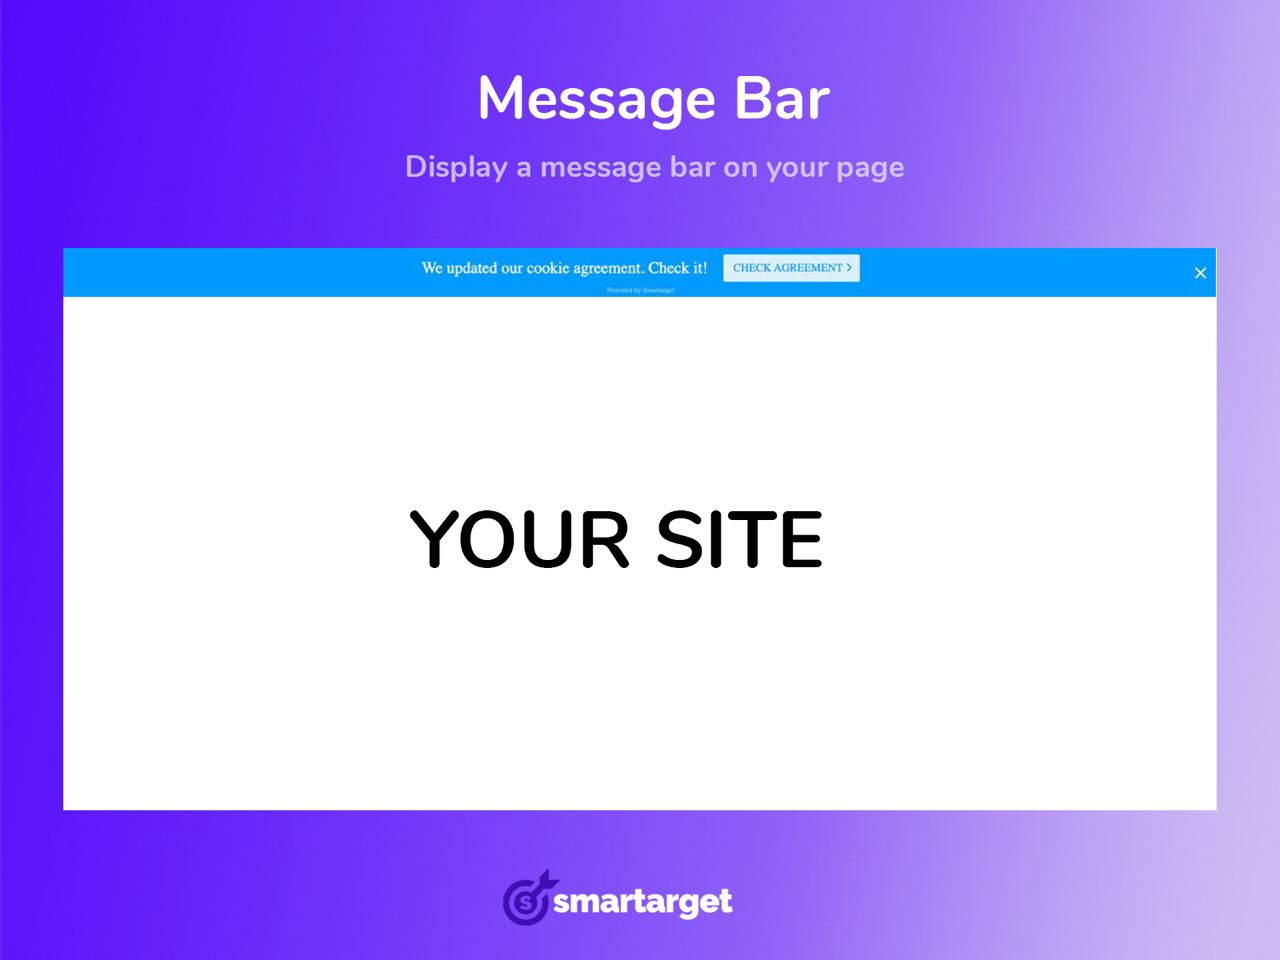 Smartarget - Message Bar Image